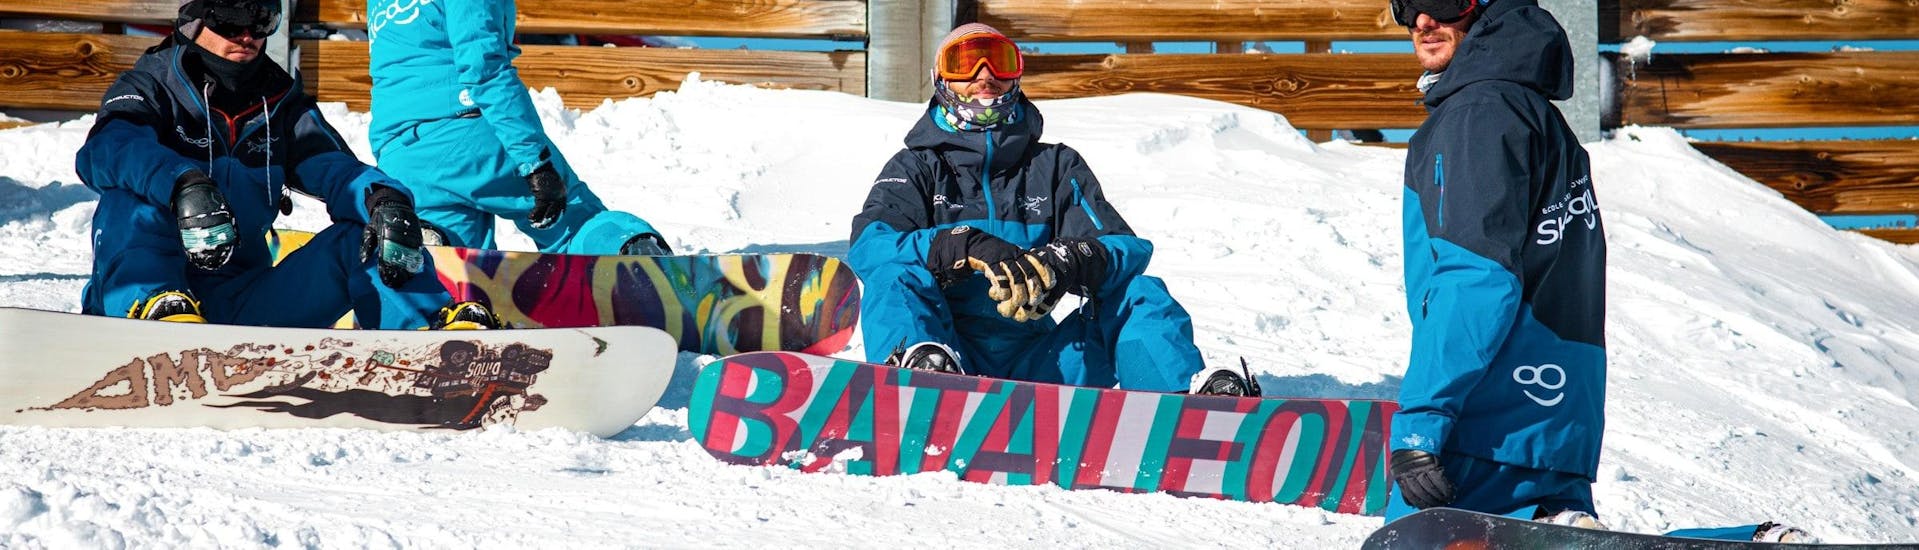 Gli snowboarder sono seduti sulla neve e aspettano l'inizio delle lezioni private di snowboard per tutti i livelli con Ski Cool Val Thorens.